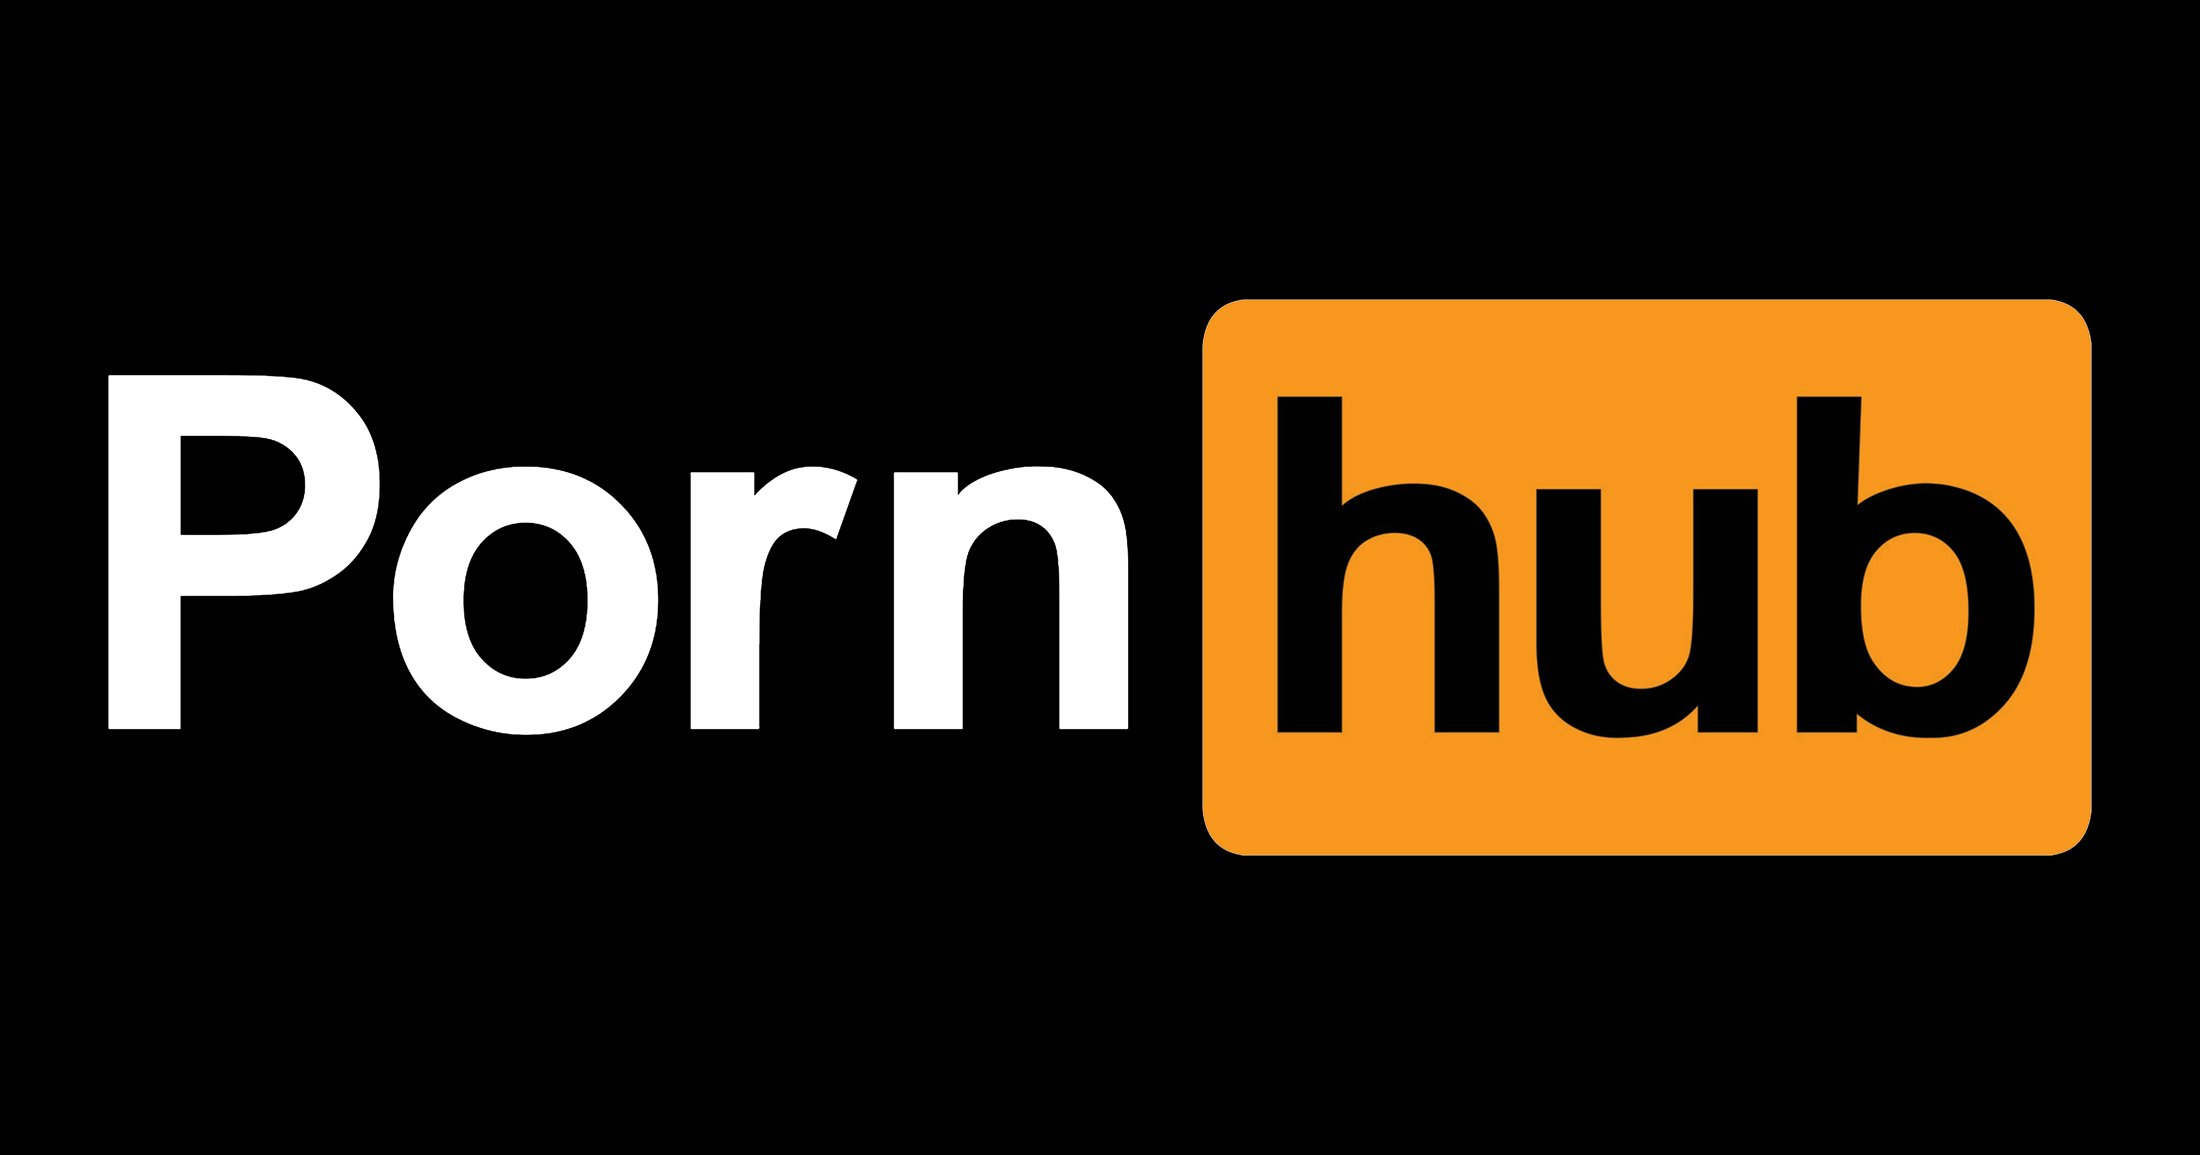 Pornhub : une date de sortie pour le sulfureux documentaire de Netflix